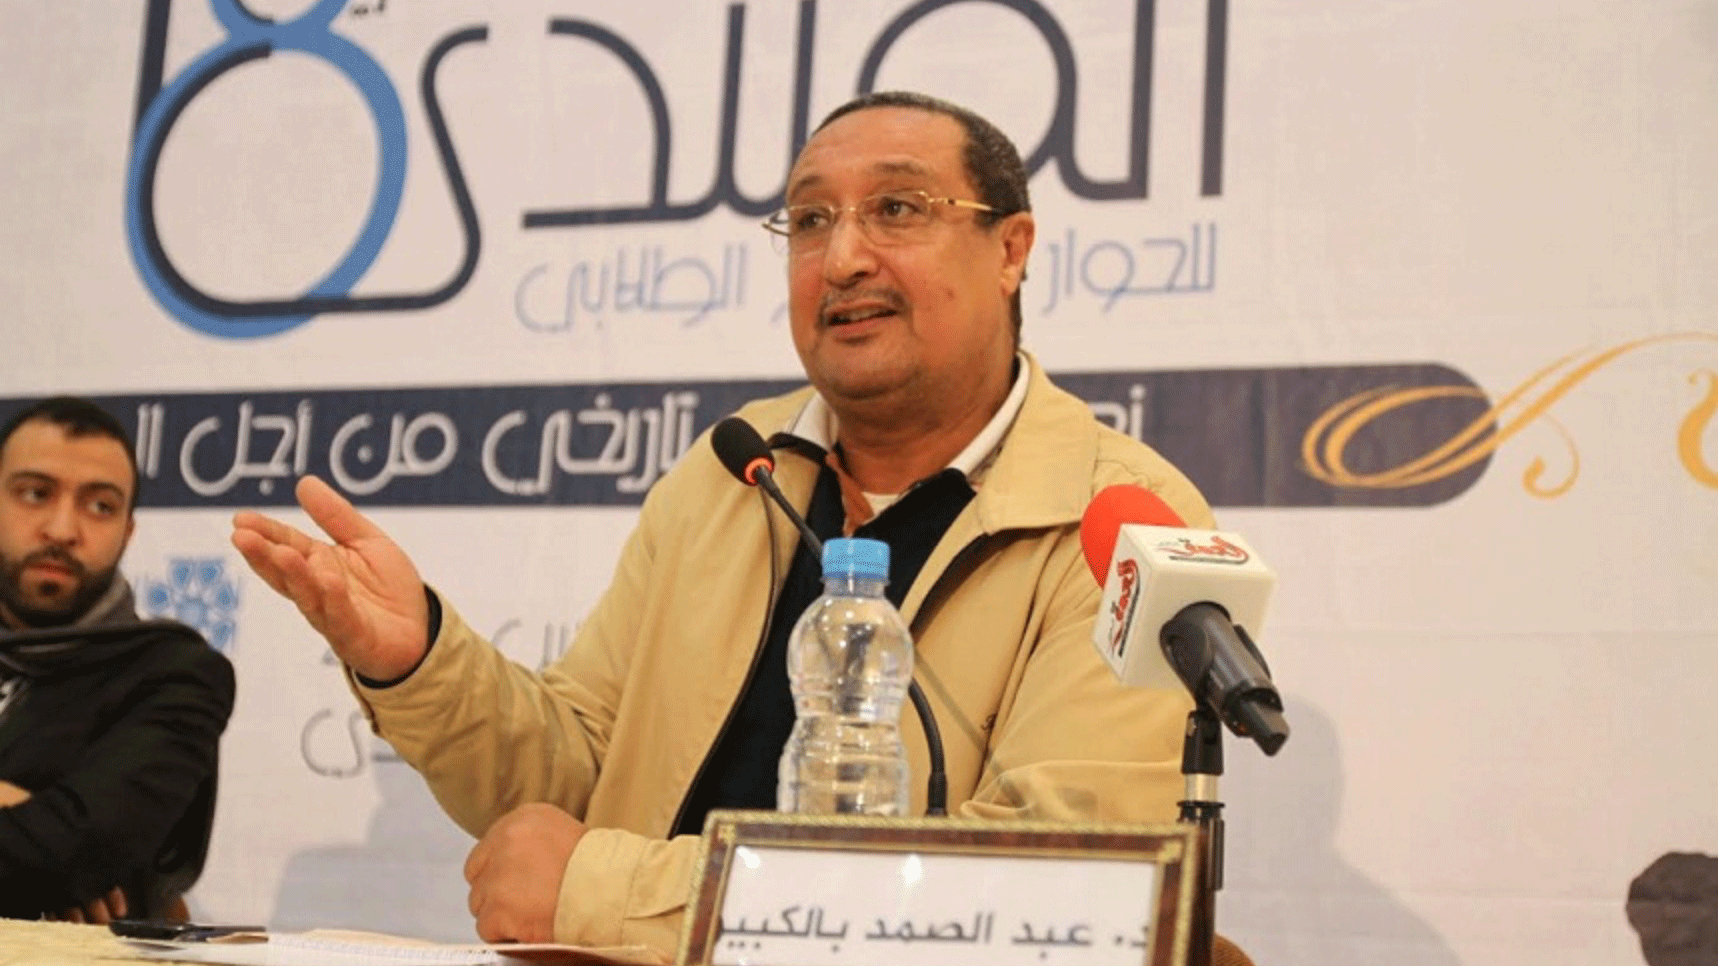 السياسي المغربي عبد الصمد بلكبير يتضامن مع السعودية بشأن قضية خاشقجي